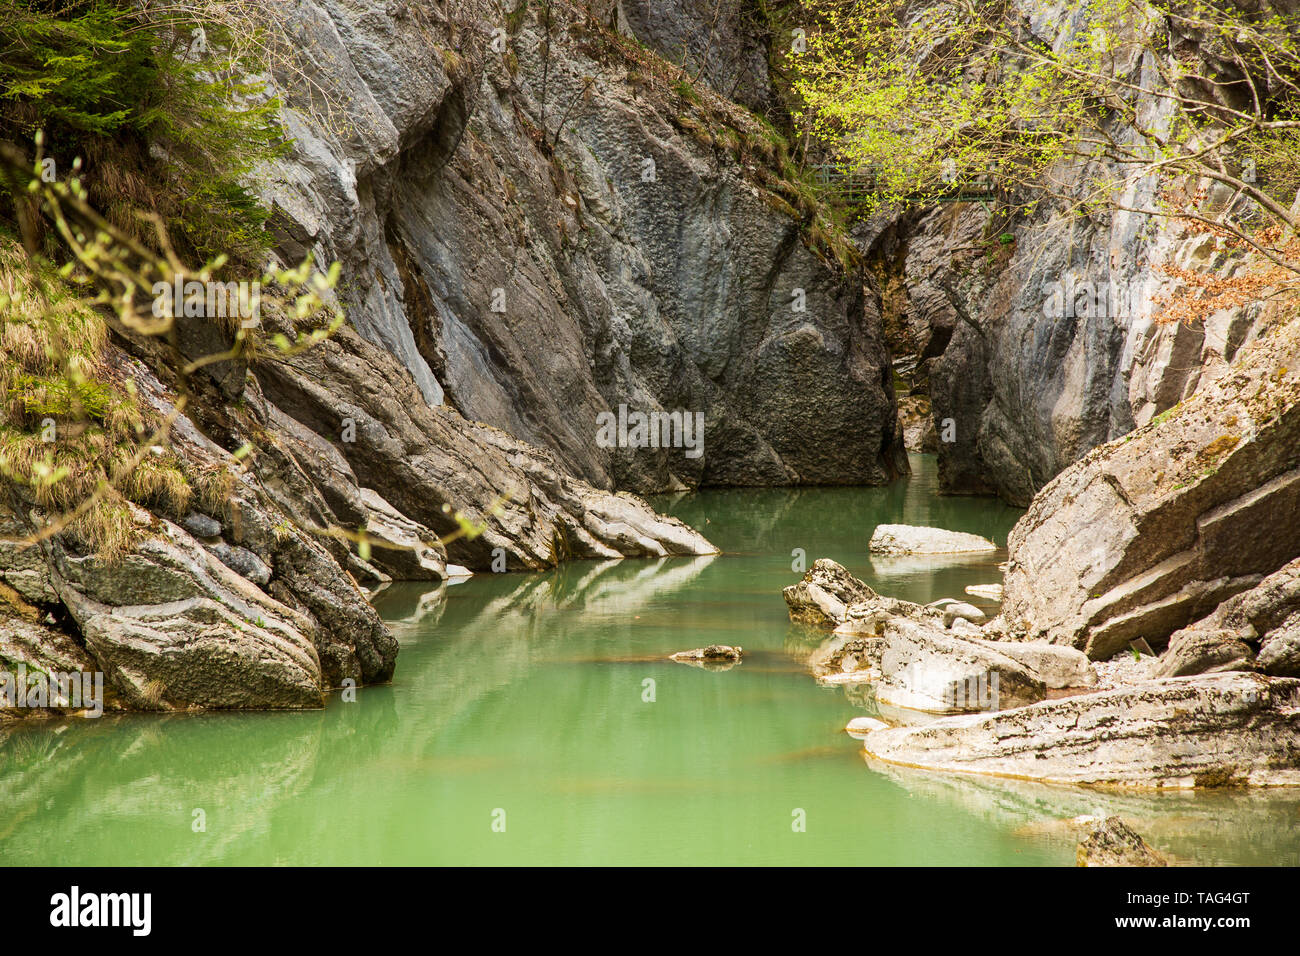 Gorges de la Jogne river canyon in Broc, Switzerland Stock Photo - Alamy